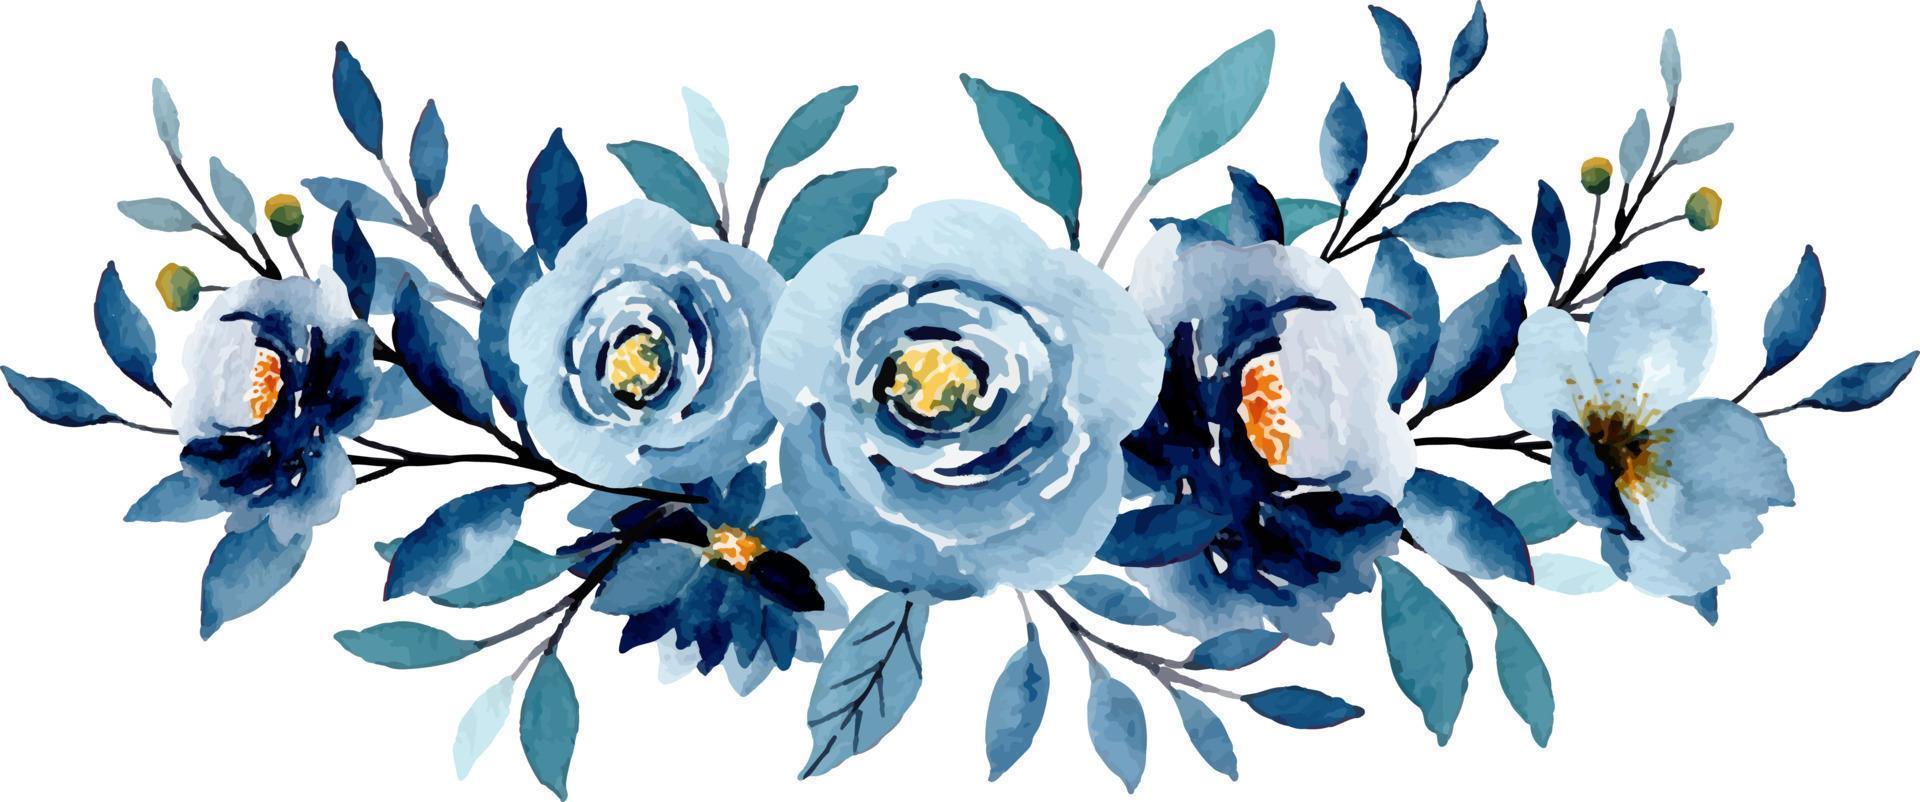 azul flor ramalhete com aguarela para fundo, casamento, tecido, têxtil, saudações, cartão, papel de parede, bandeira, adesivo, decoração etc. vetor